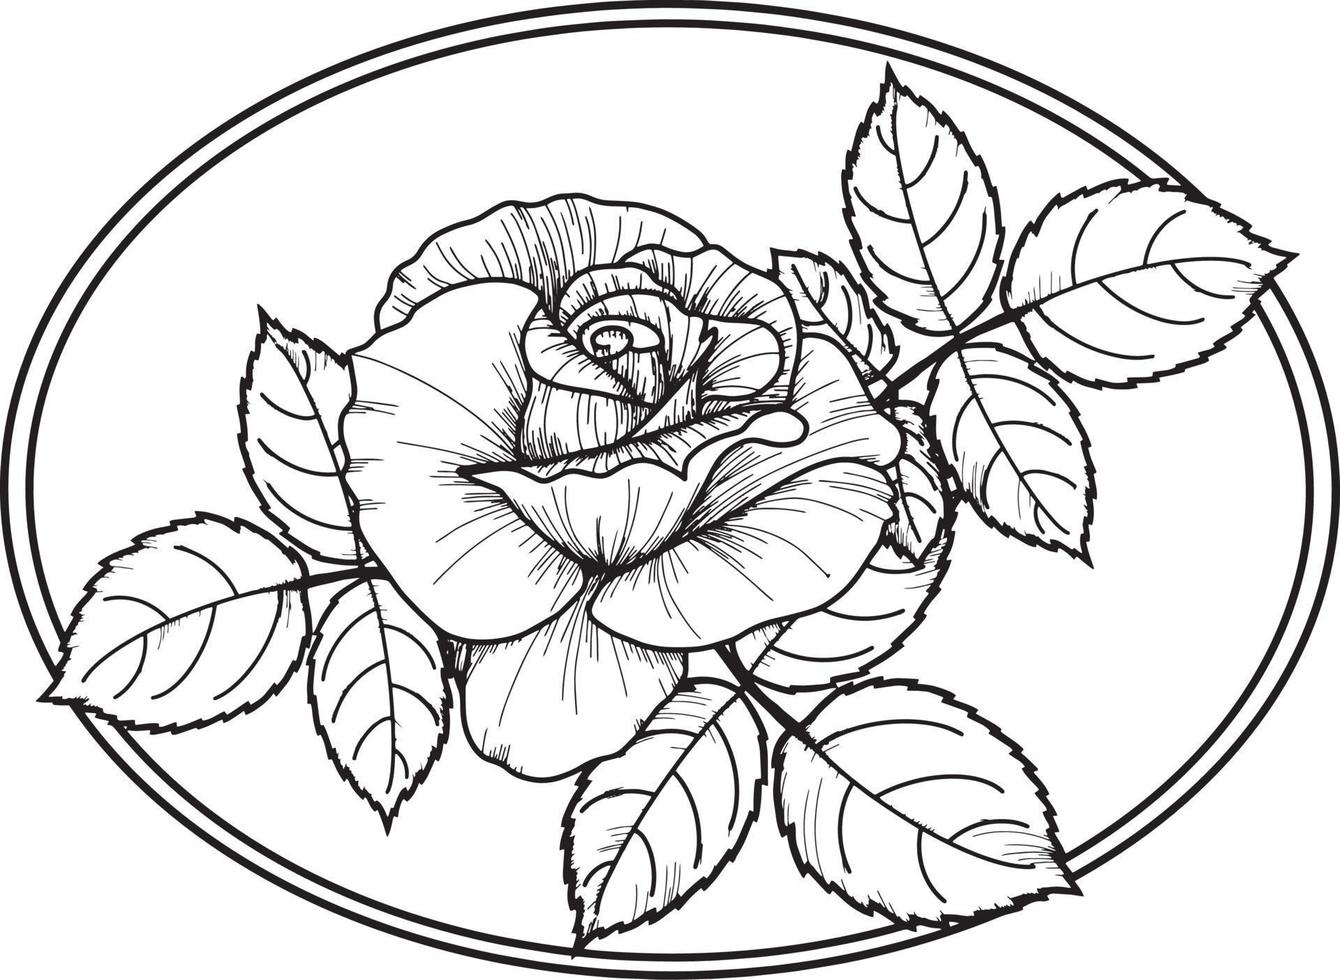 rosa decorativa con foglie ovali. illustrazione vettoriale su sfondo trasparente